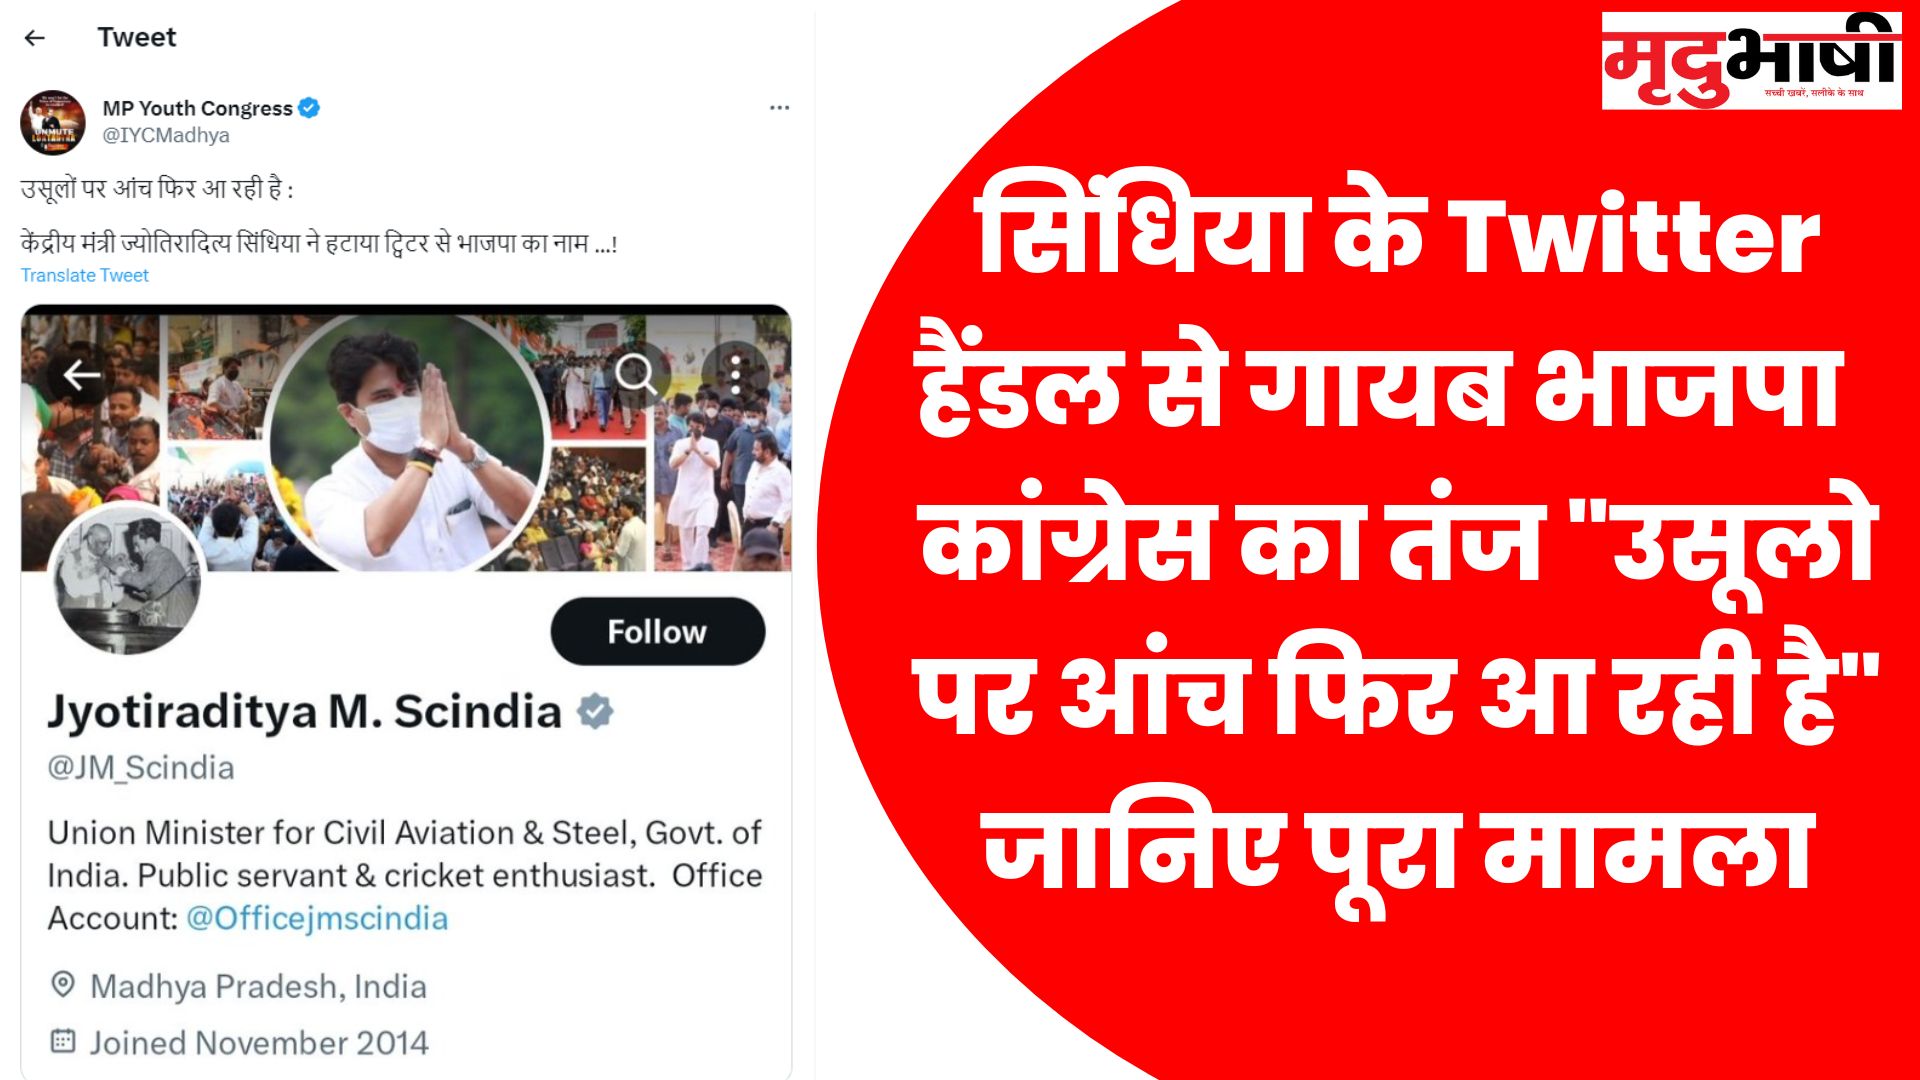 सिंधिया के Twitter हैंडल से गायब भाजपा कांग्रेस का तंज उसूलो पर आंच फिर आ रही है जानिए पूरा मामला